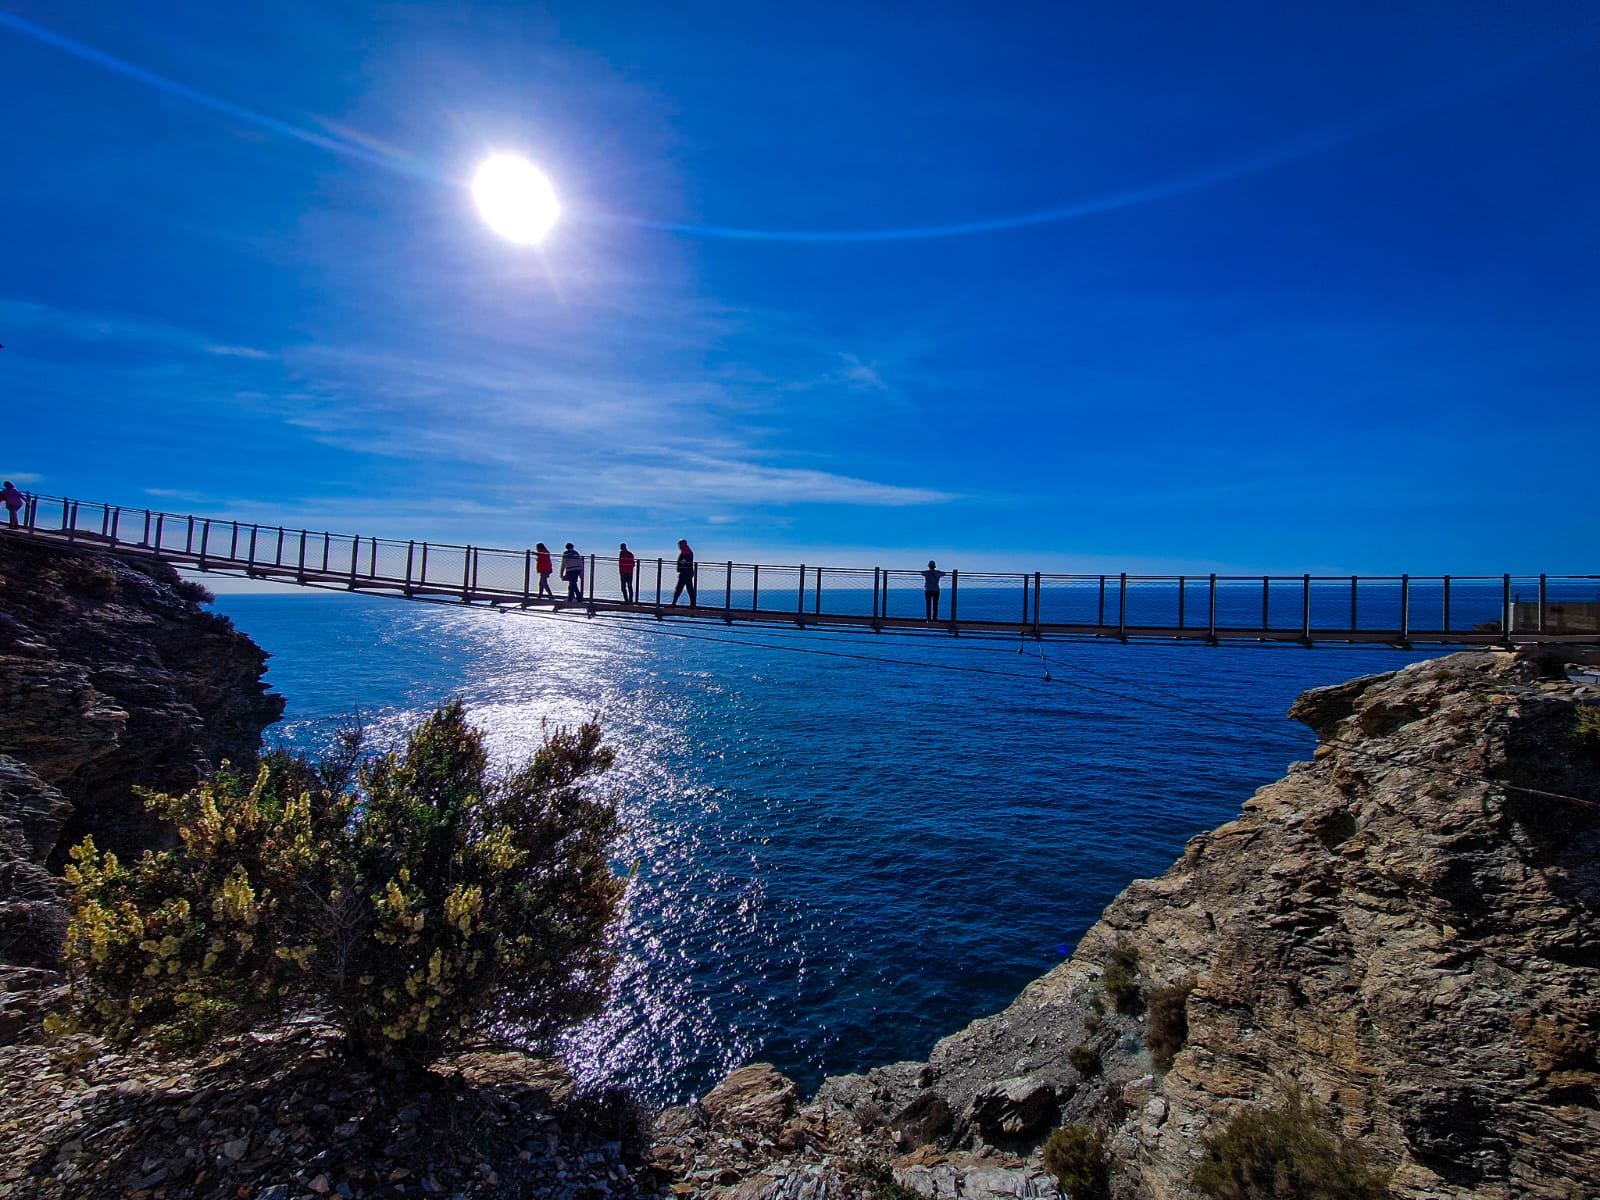 Asómate al vacío desde el primer puente colgante de la costa mediterránea española